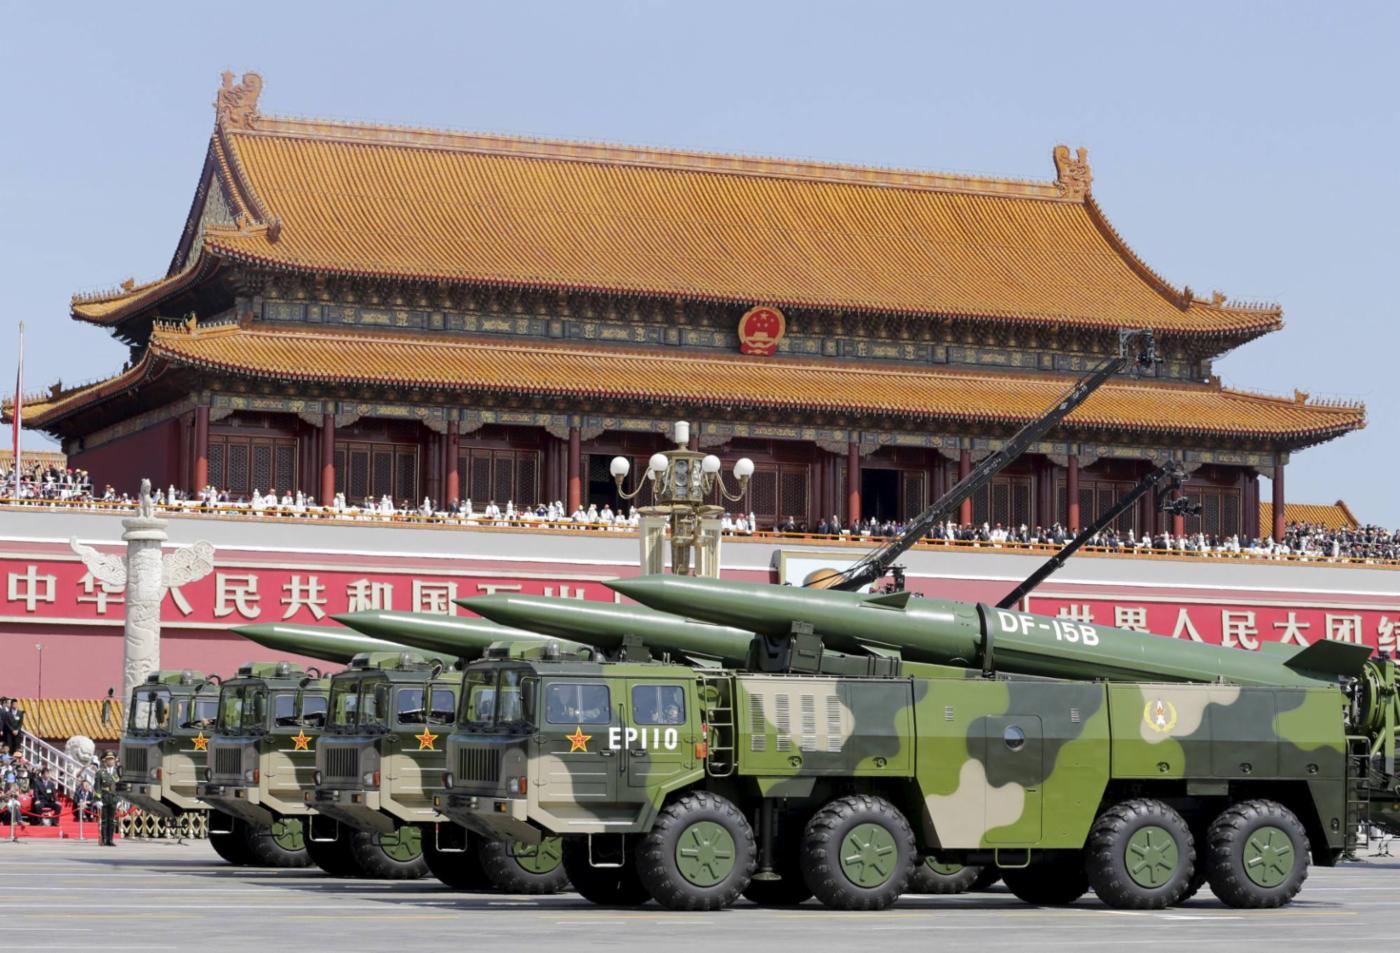  Montée en puissance de la Chine : dans son Livre blanc sur la défense publié en 2021, le Japon affirme que la Chine s’est « lancée avec célérité dans un vaste processus de renforcement de sa puissance militaire, en termes qualitatifs et quantitatifs. » © Reuters
